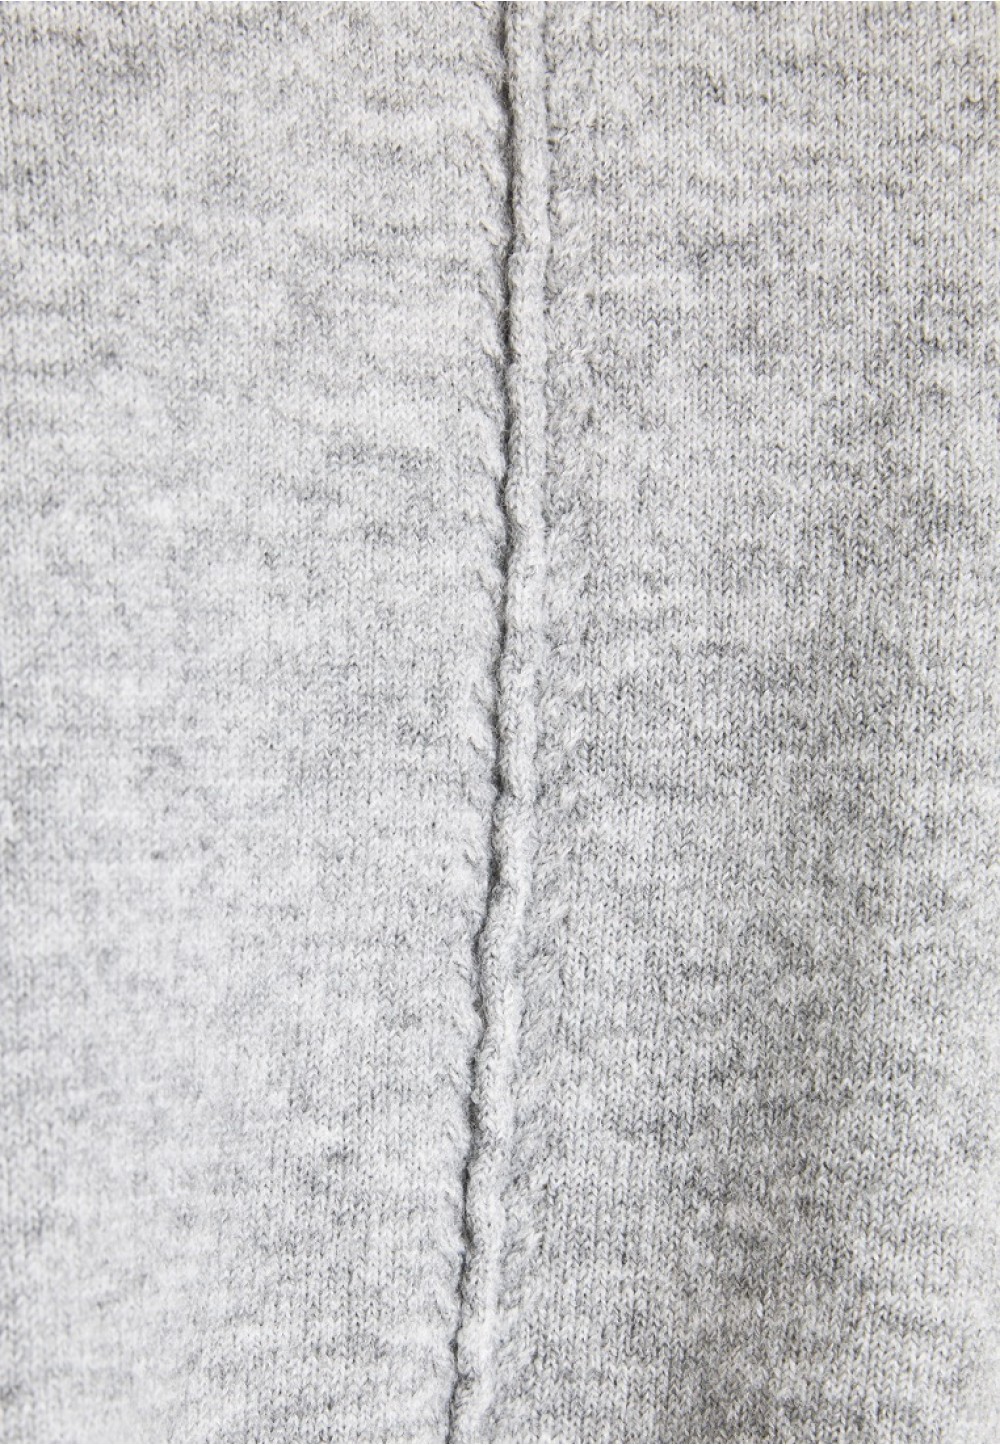 Жіночий сірий светр з довгим рукавом